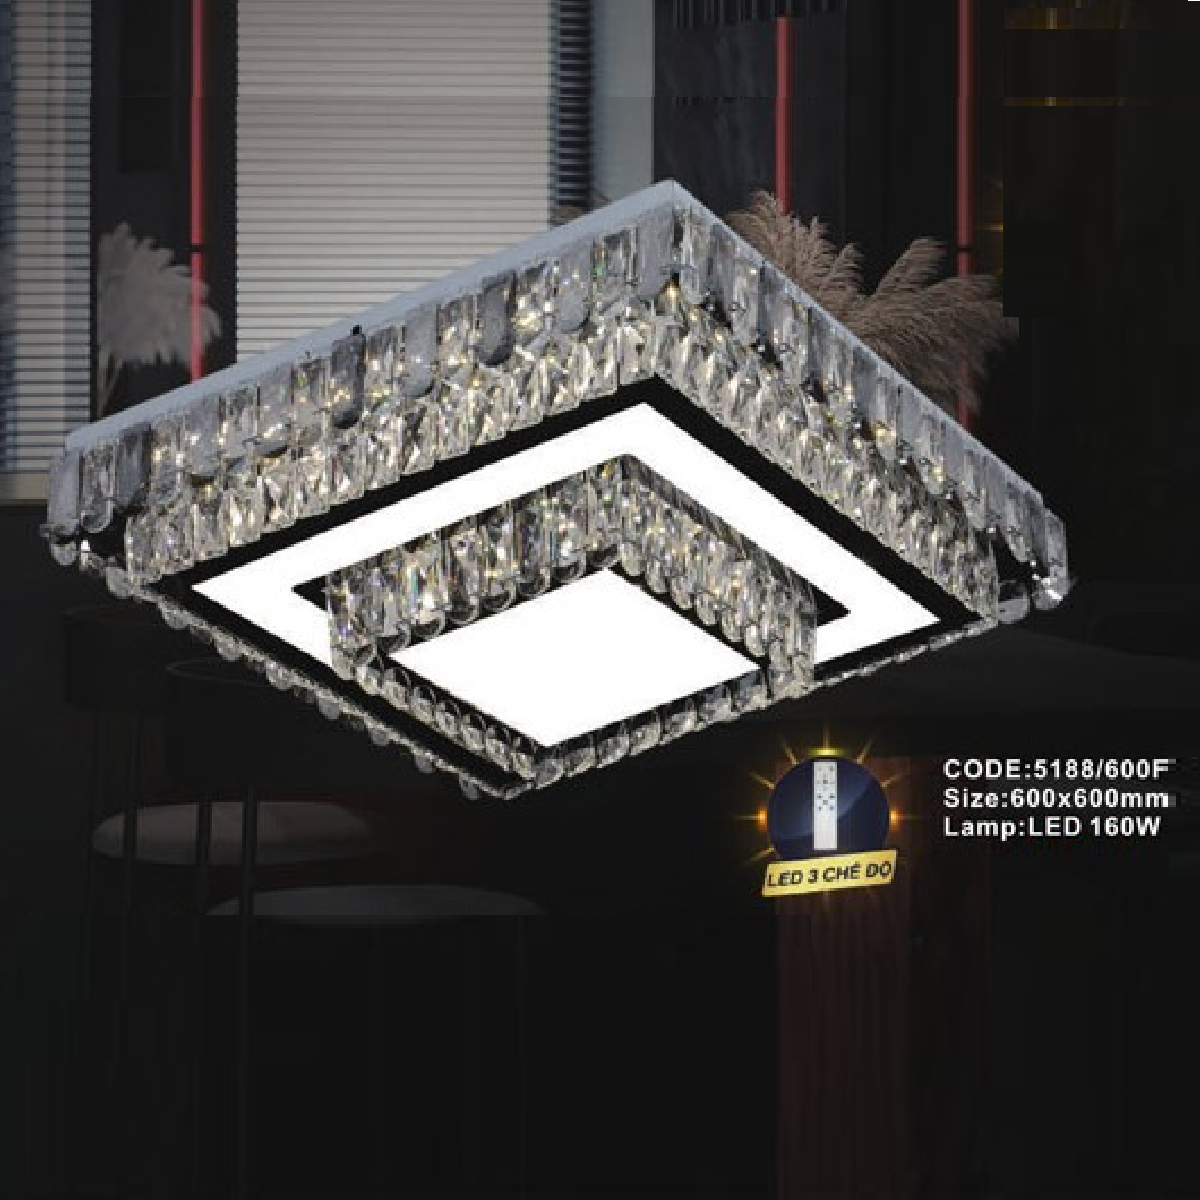 CODE: 5188/600F: Đèn áp trần vuông LED - KT: L600mm x W600mm - Đèn LED 160W, ánh sáng đổi 3 màu